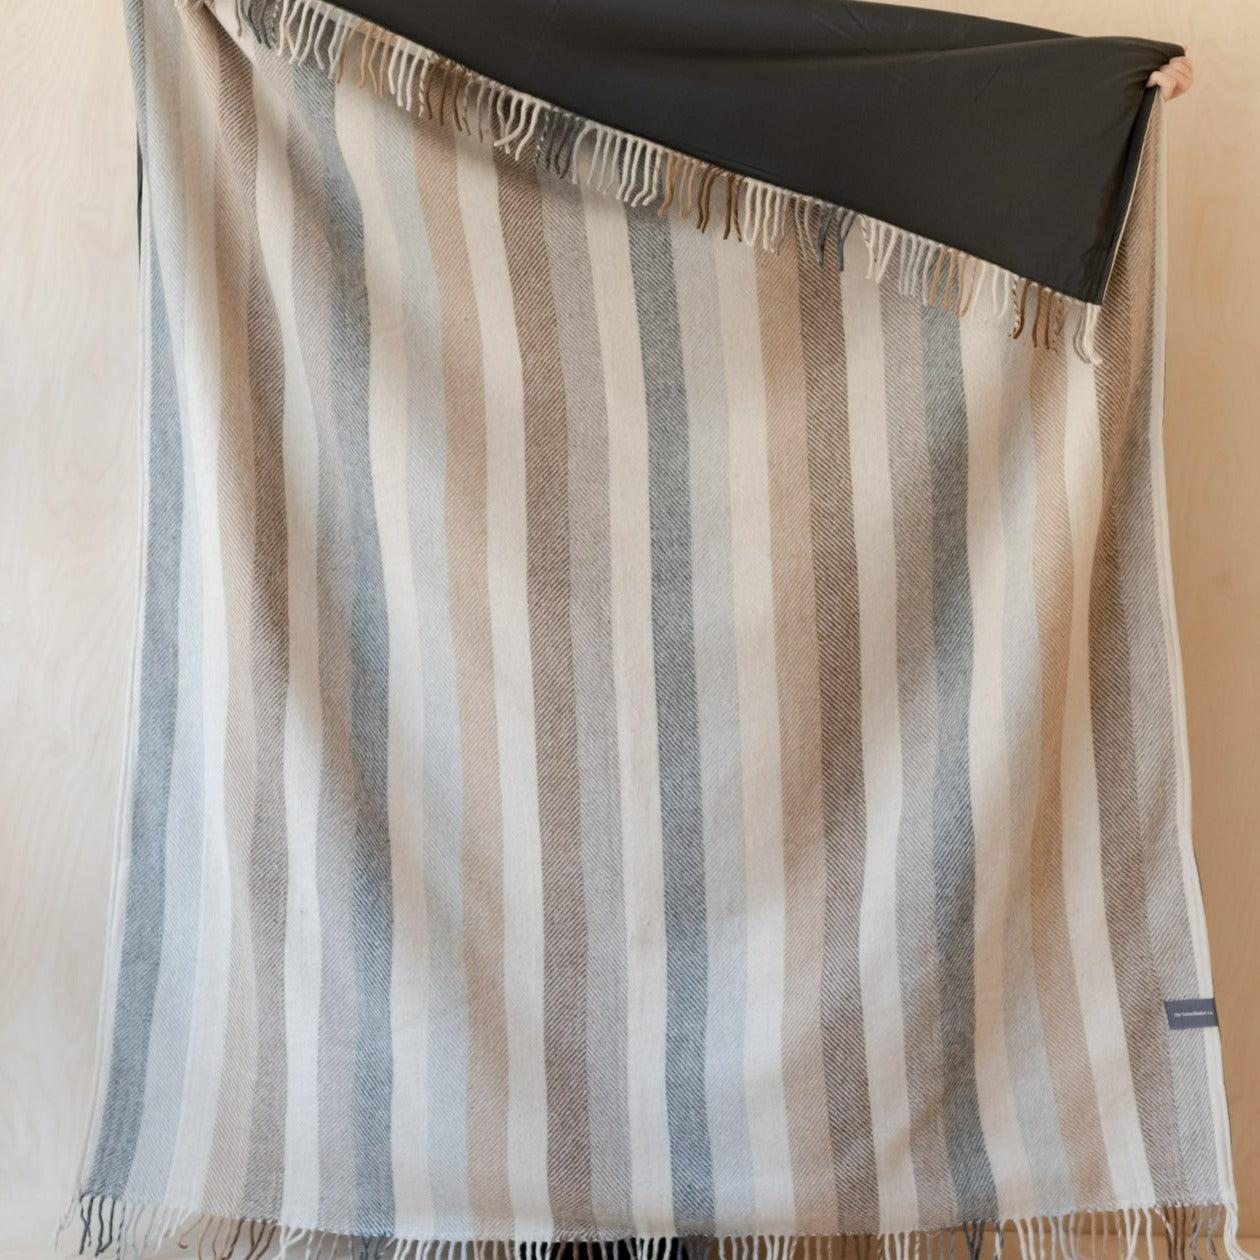 Recycled Wool Waterproof Picnic Blanket in Neutral Stripe - Brown Leather